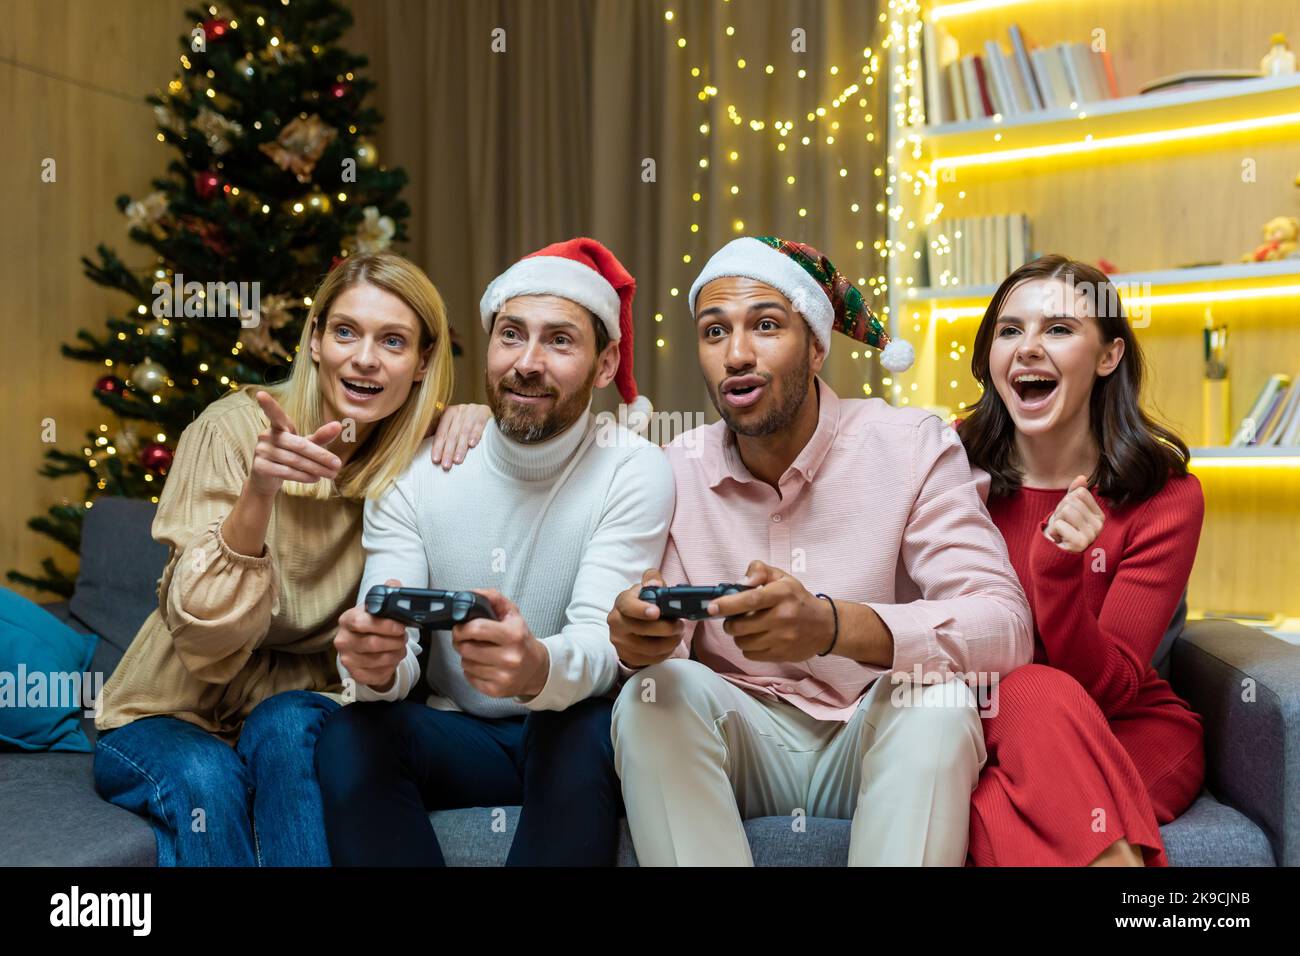 Groupe de quatre amis du nouvel an se détendant et célébrant les fêtes de Noël, les invités assis sur un canapé, hommes et femmes, jouant à des jeux vidéo sur des consoles de joystick. Banque D'Images